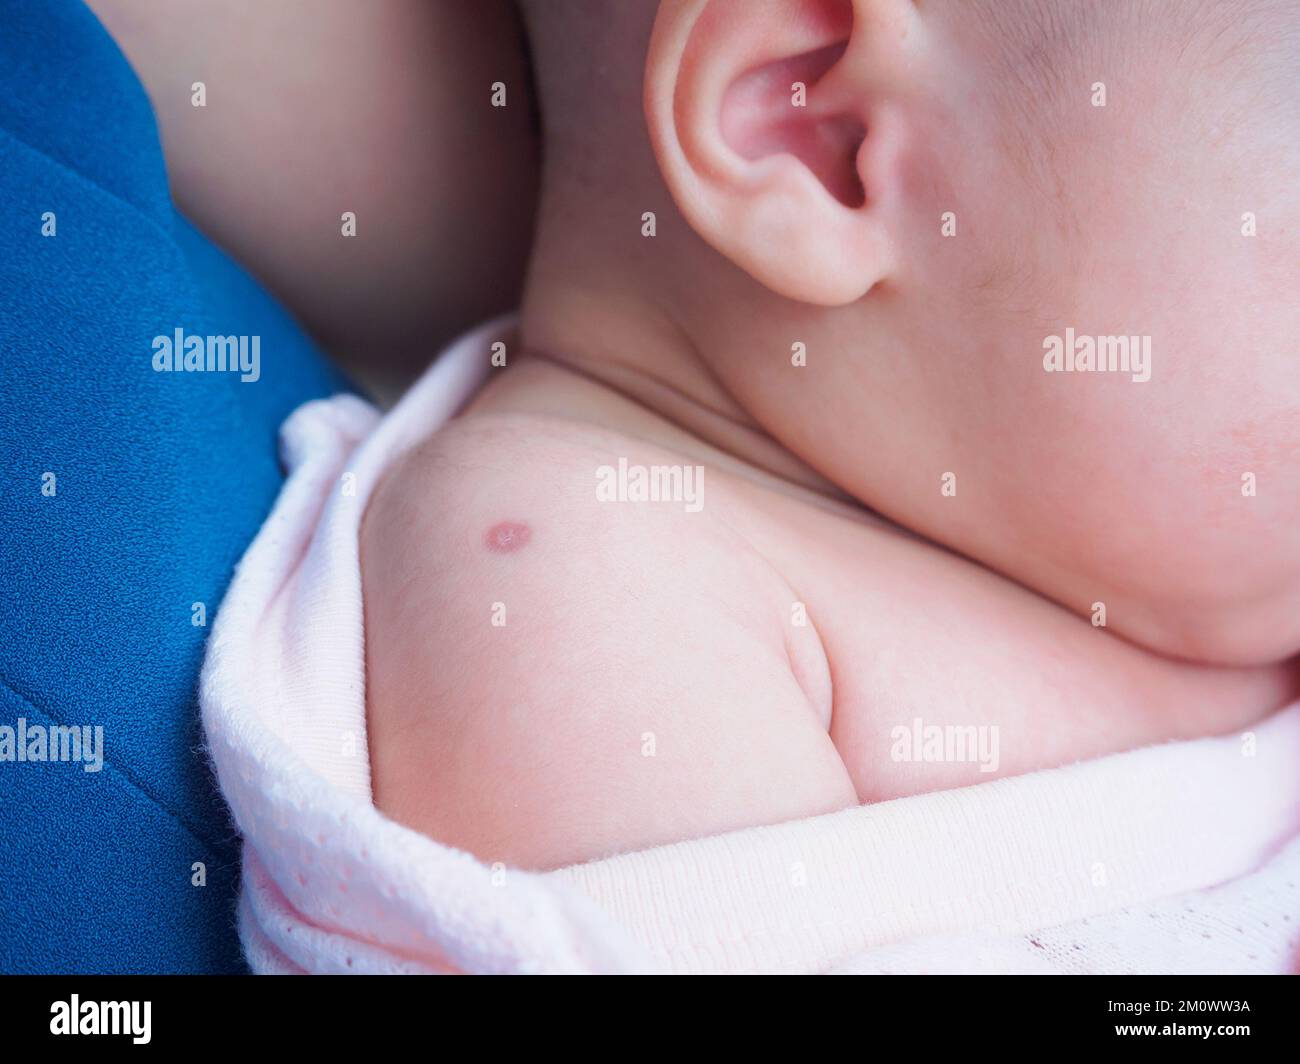 Réaction de vaccination du vaccin BCG de Bacillus Calmette Guérin sur l'épaule du nouveau-né, utilisé contre la tuberculose Banque D'Images